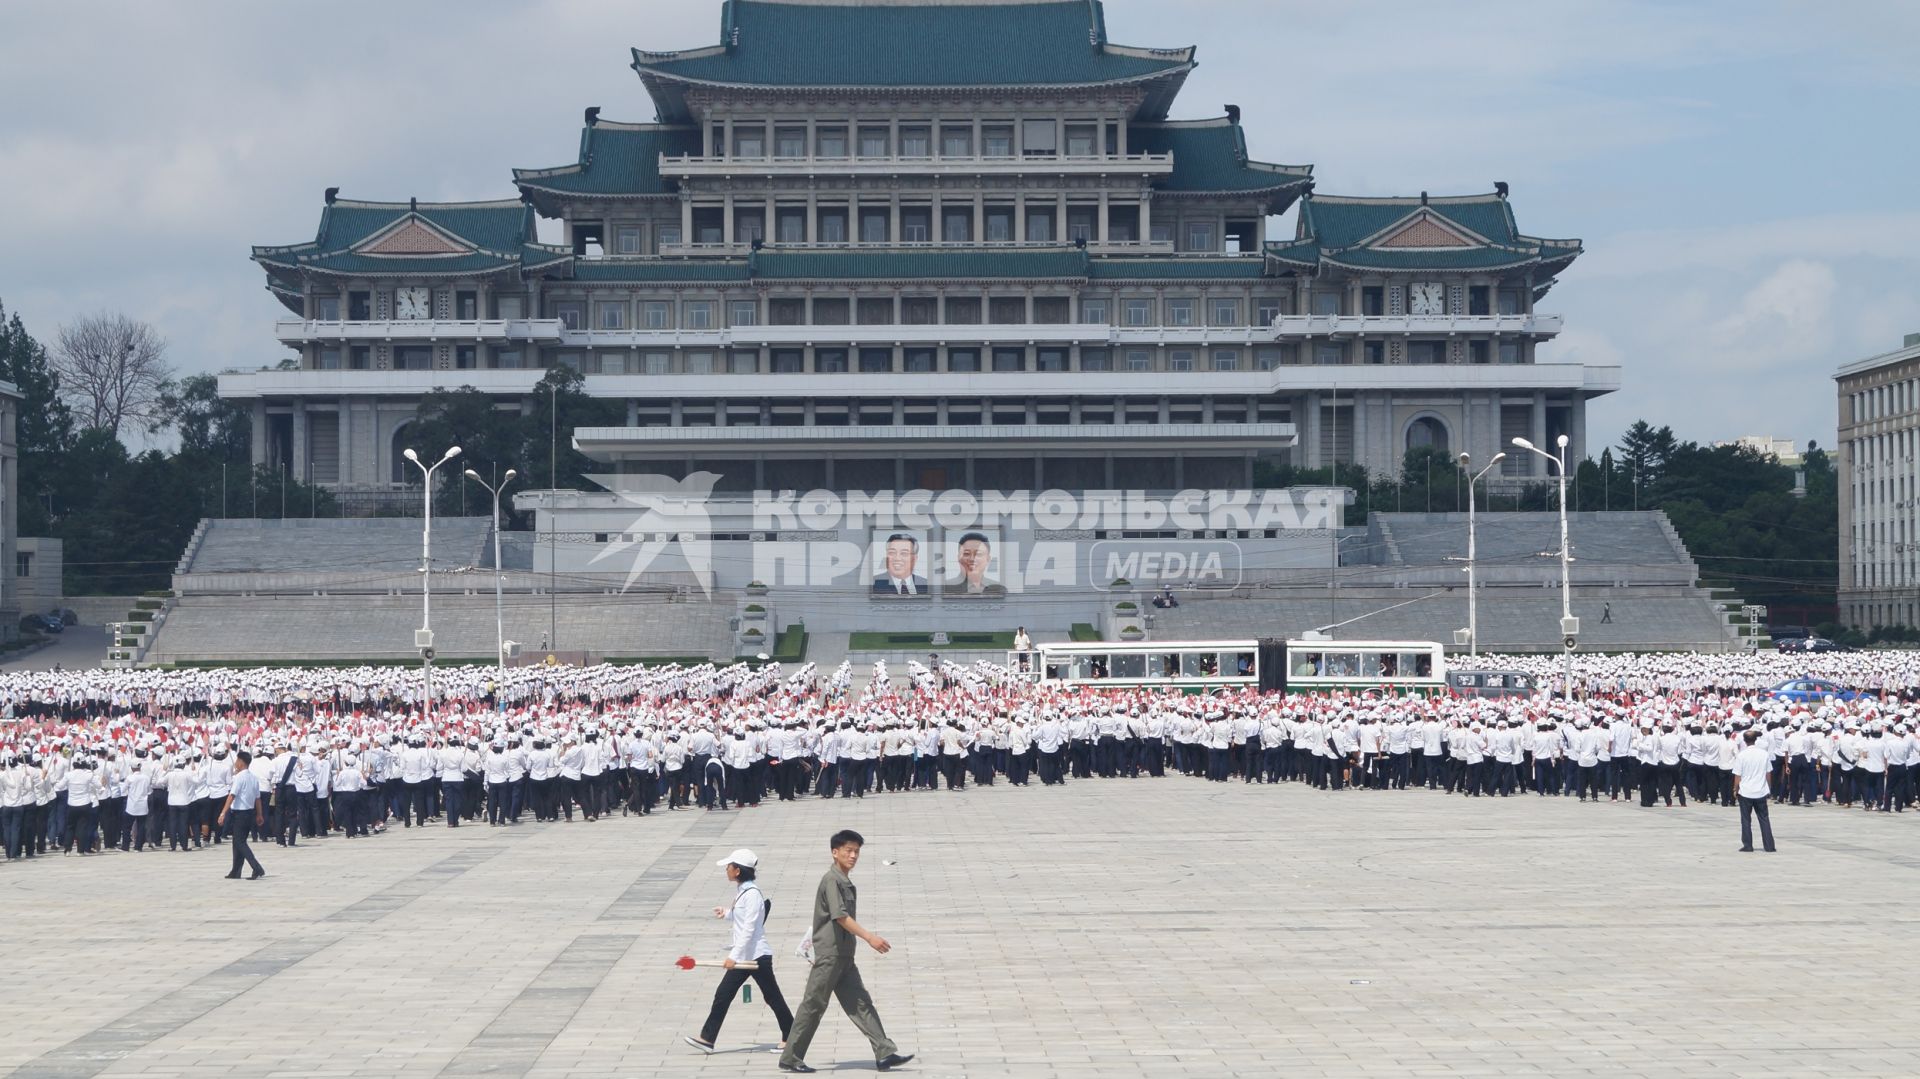 КНДР, Пхеньян. Репетиция парада на площади имени Ким Ир Сена.